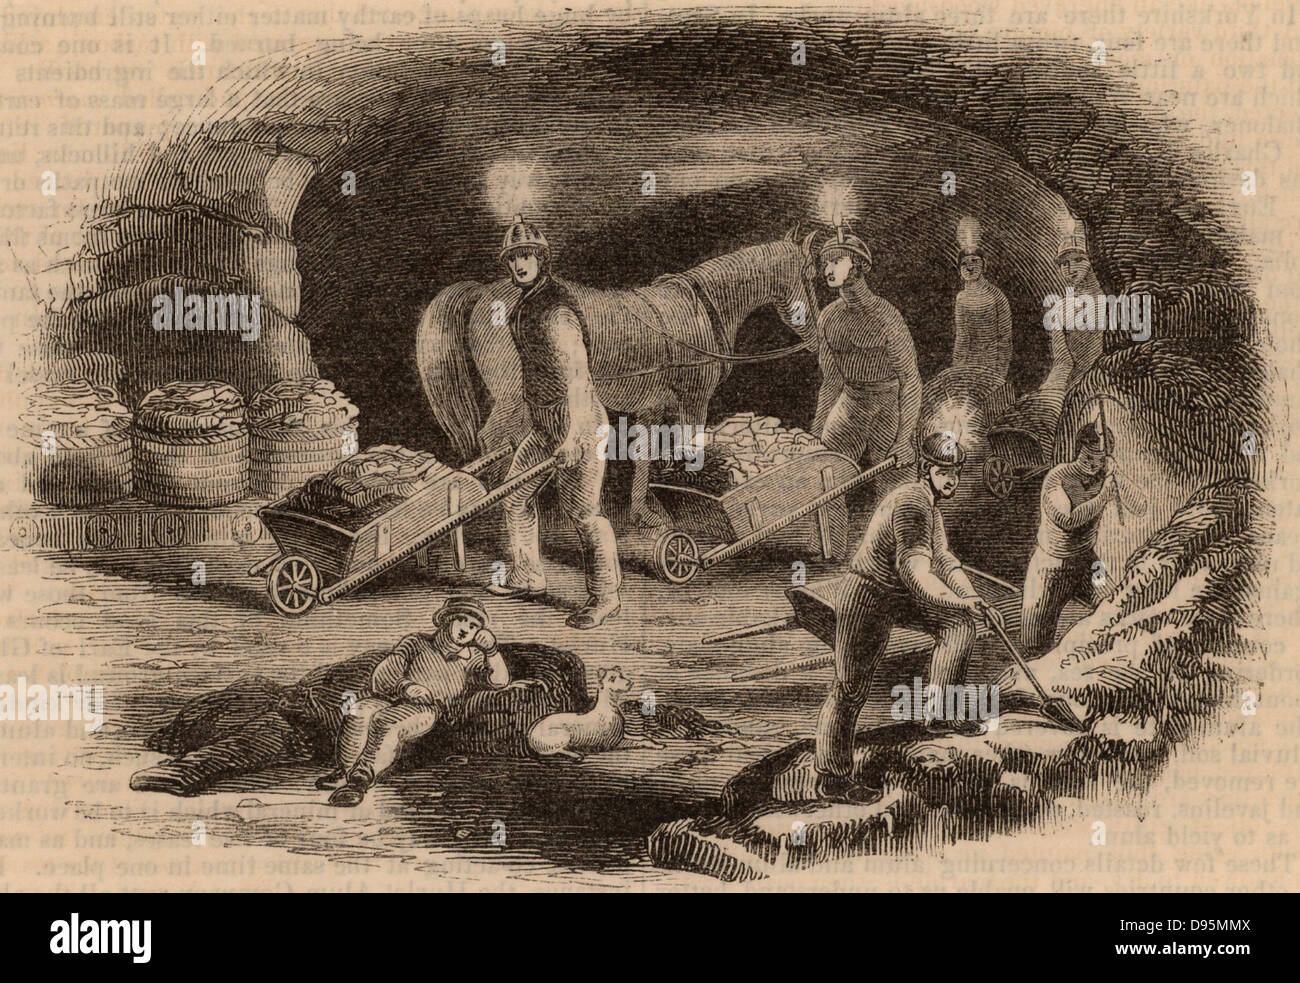 L'alun Hurlet mine près de Glasgow, Écosse, montrant les mineurs extraire du minerai. La lumière est fournie par des bougies fixées sur leur casque. À partir de 'Le Penny Magazine' (Londres, octobre 1843). La gravure. Banque D'Images